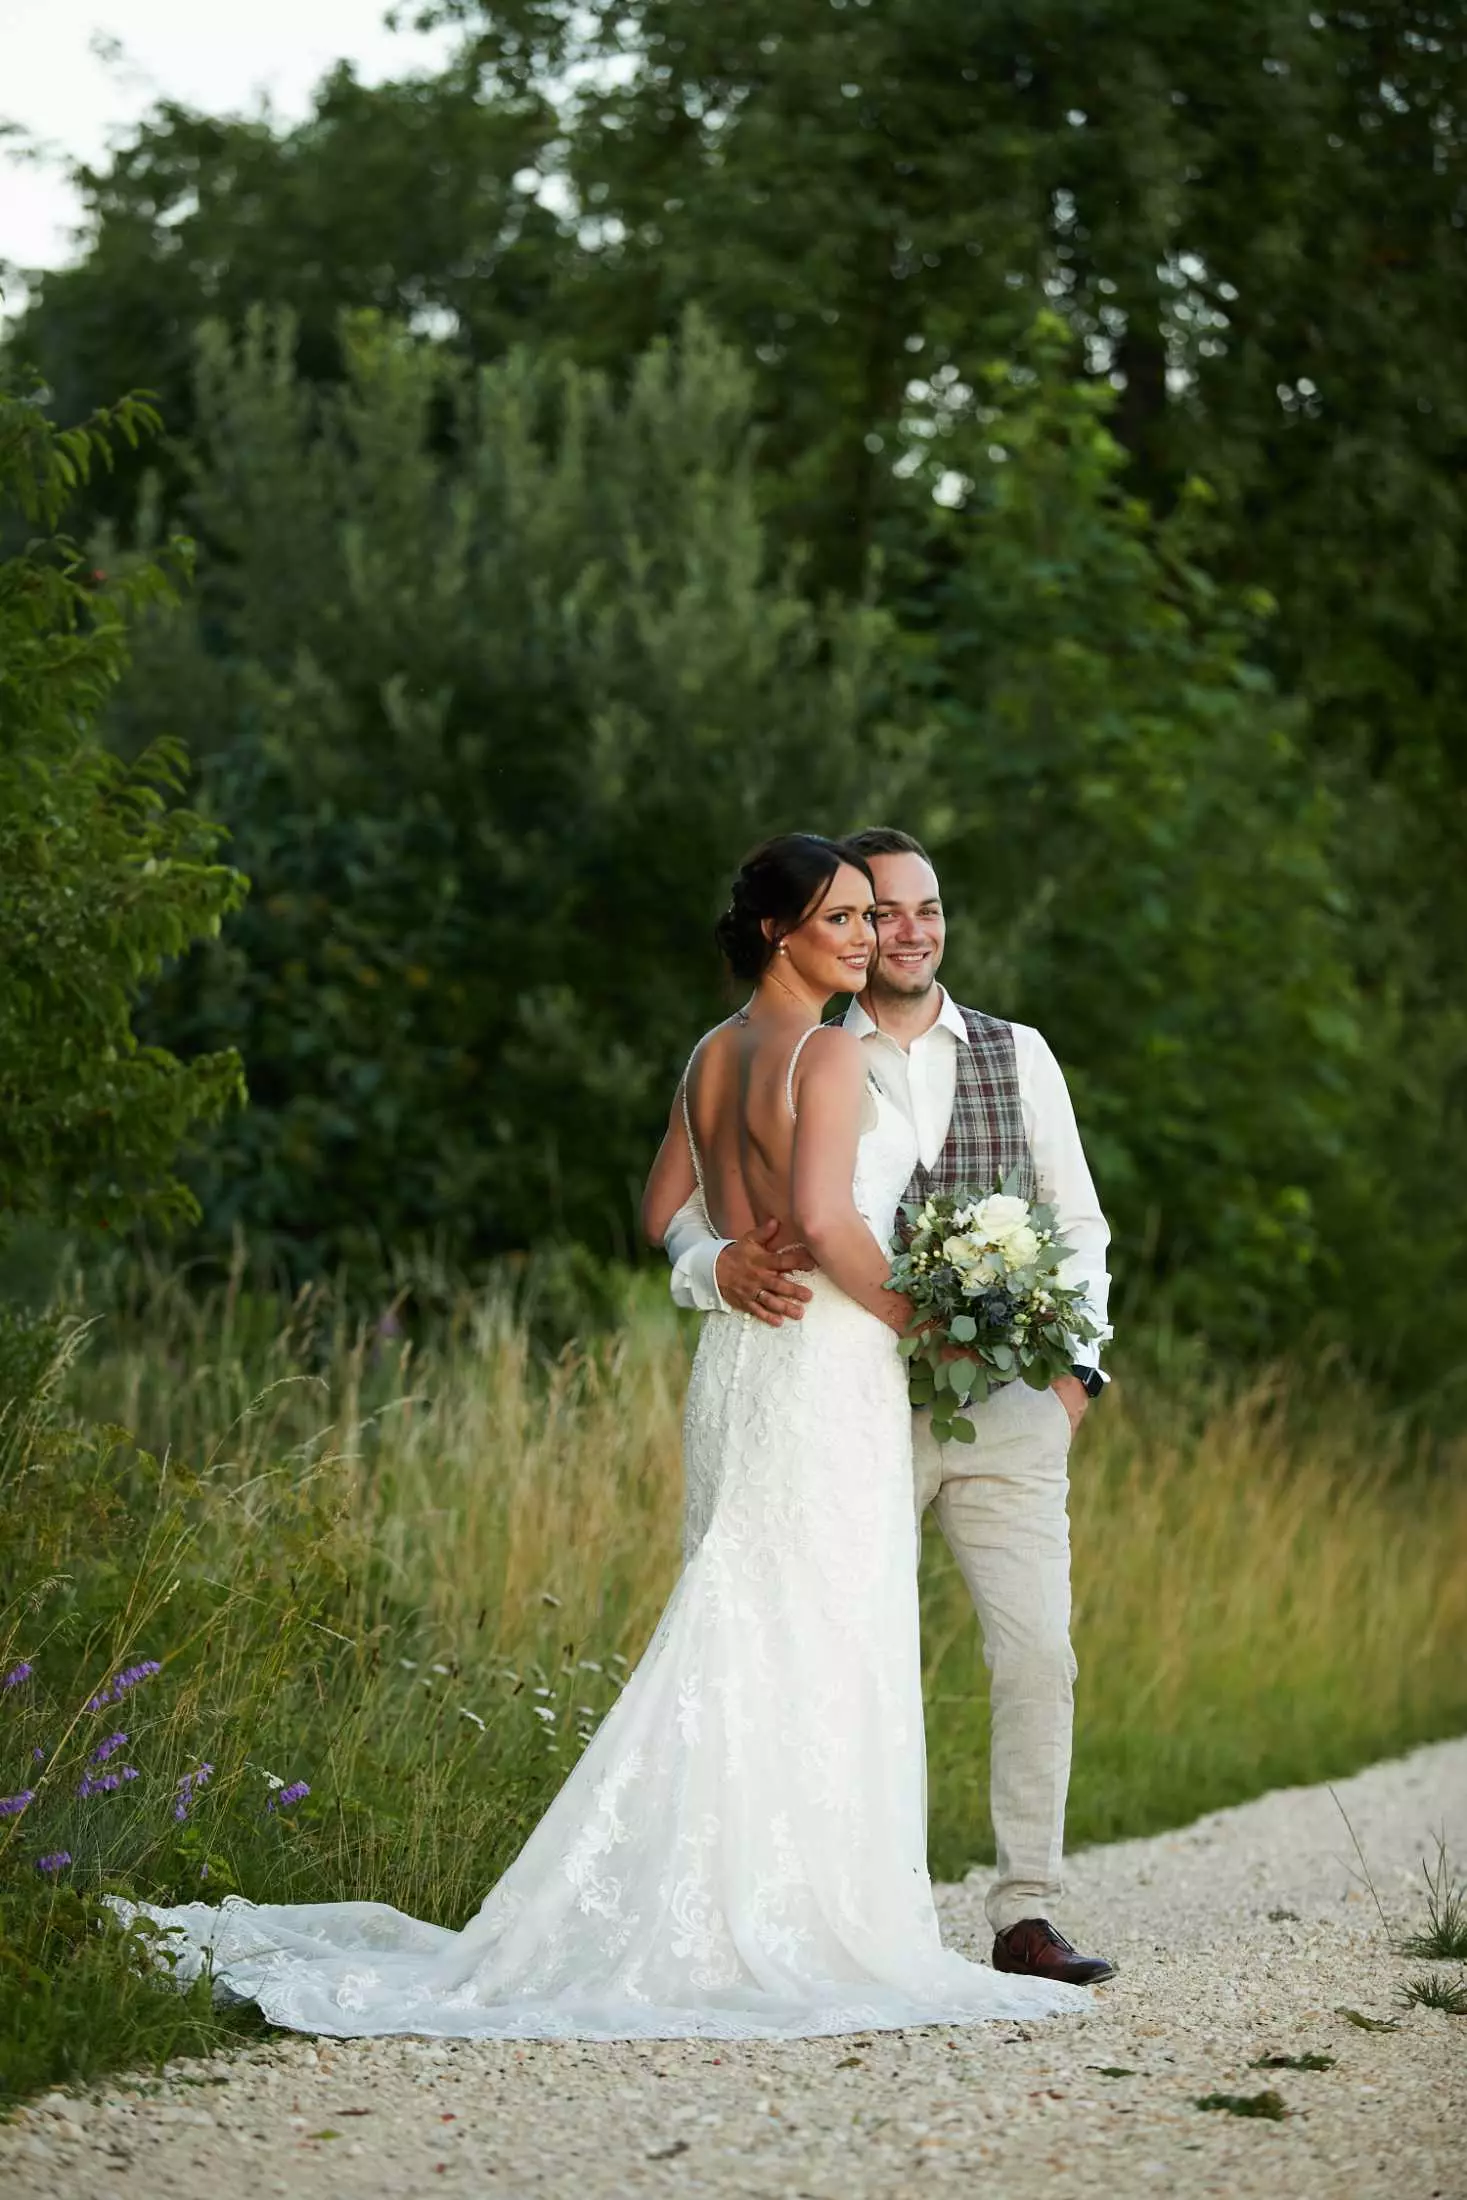 Hochzeitsfotograf Stuttgart | Portrait eines glücklichen Brautpaares auf einem asphaltierten Weg umgeben von Bäumen und Gebüsch. Perfekte Erinnerung für Verlobte, die auf der Suche nach den besten Hochzeitsfotografen sind.